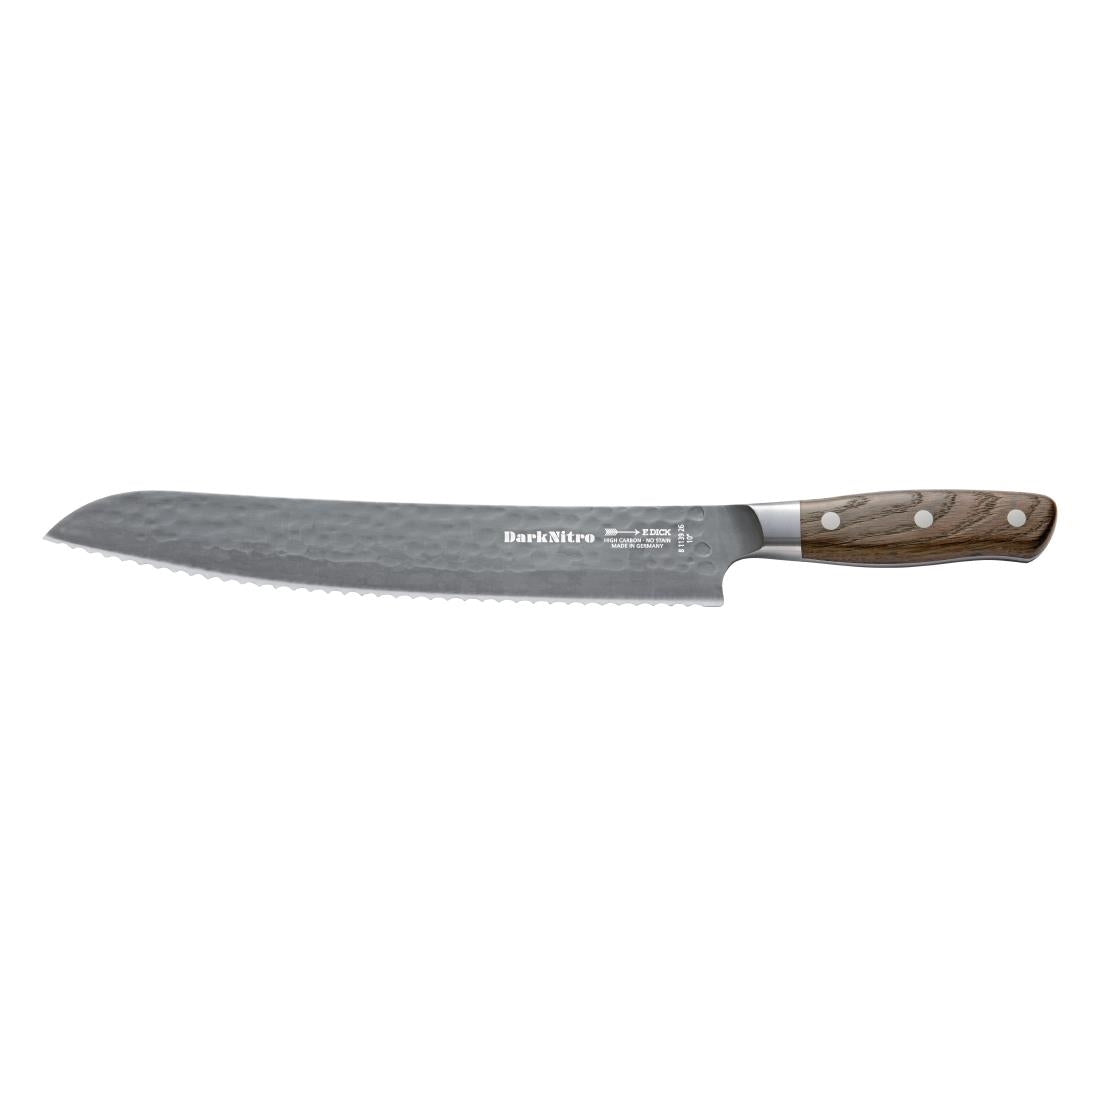 GM650 Dick DarkNitro Bread Knife 26cm